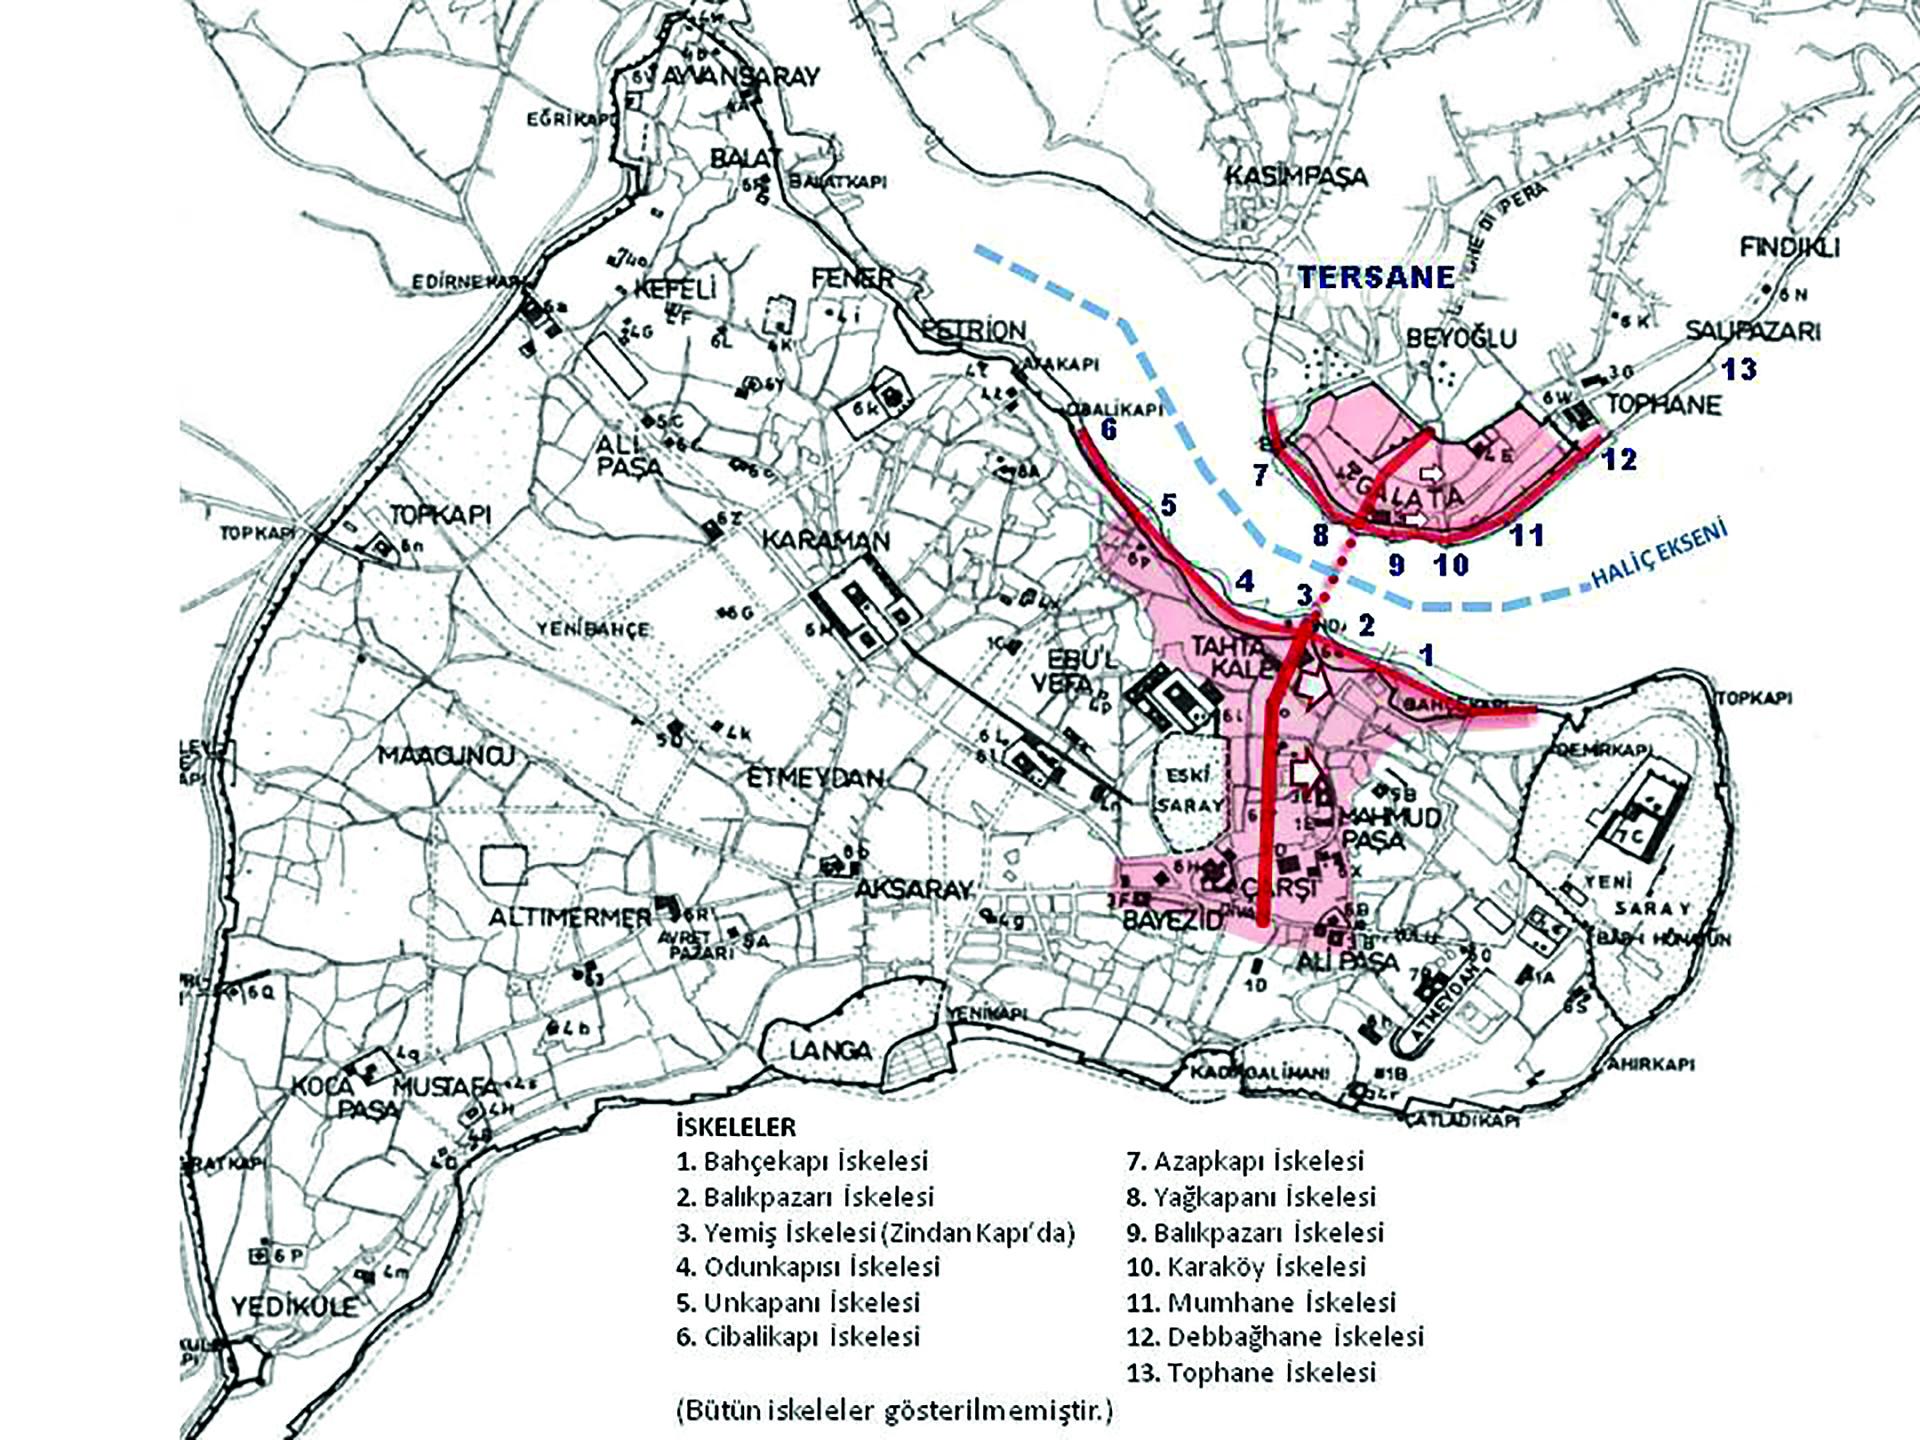 5- Osmanlı İstanbul’unun XVII. yüzyıl sonuna kadar etkinliğini sürdüren ticaret ekseni.*<br> * Ticaret ekseni XVII. yüzyılın ikinci yarısında batıya doğru kaymaya başlar. (Kaynak: Müller-Wiener’in XV. yüzyıl İstanbul’unu betimlediği haritası kullanılarak yazar tarafından hazırlanmıştır)